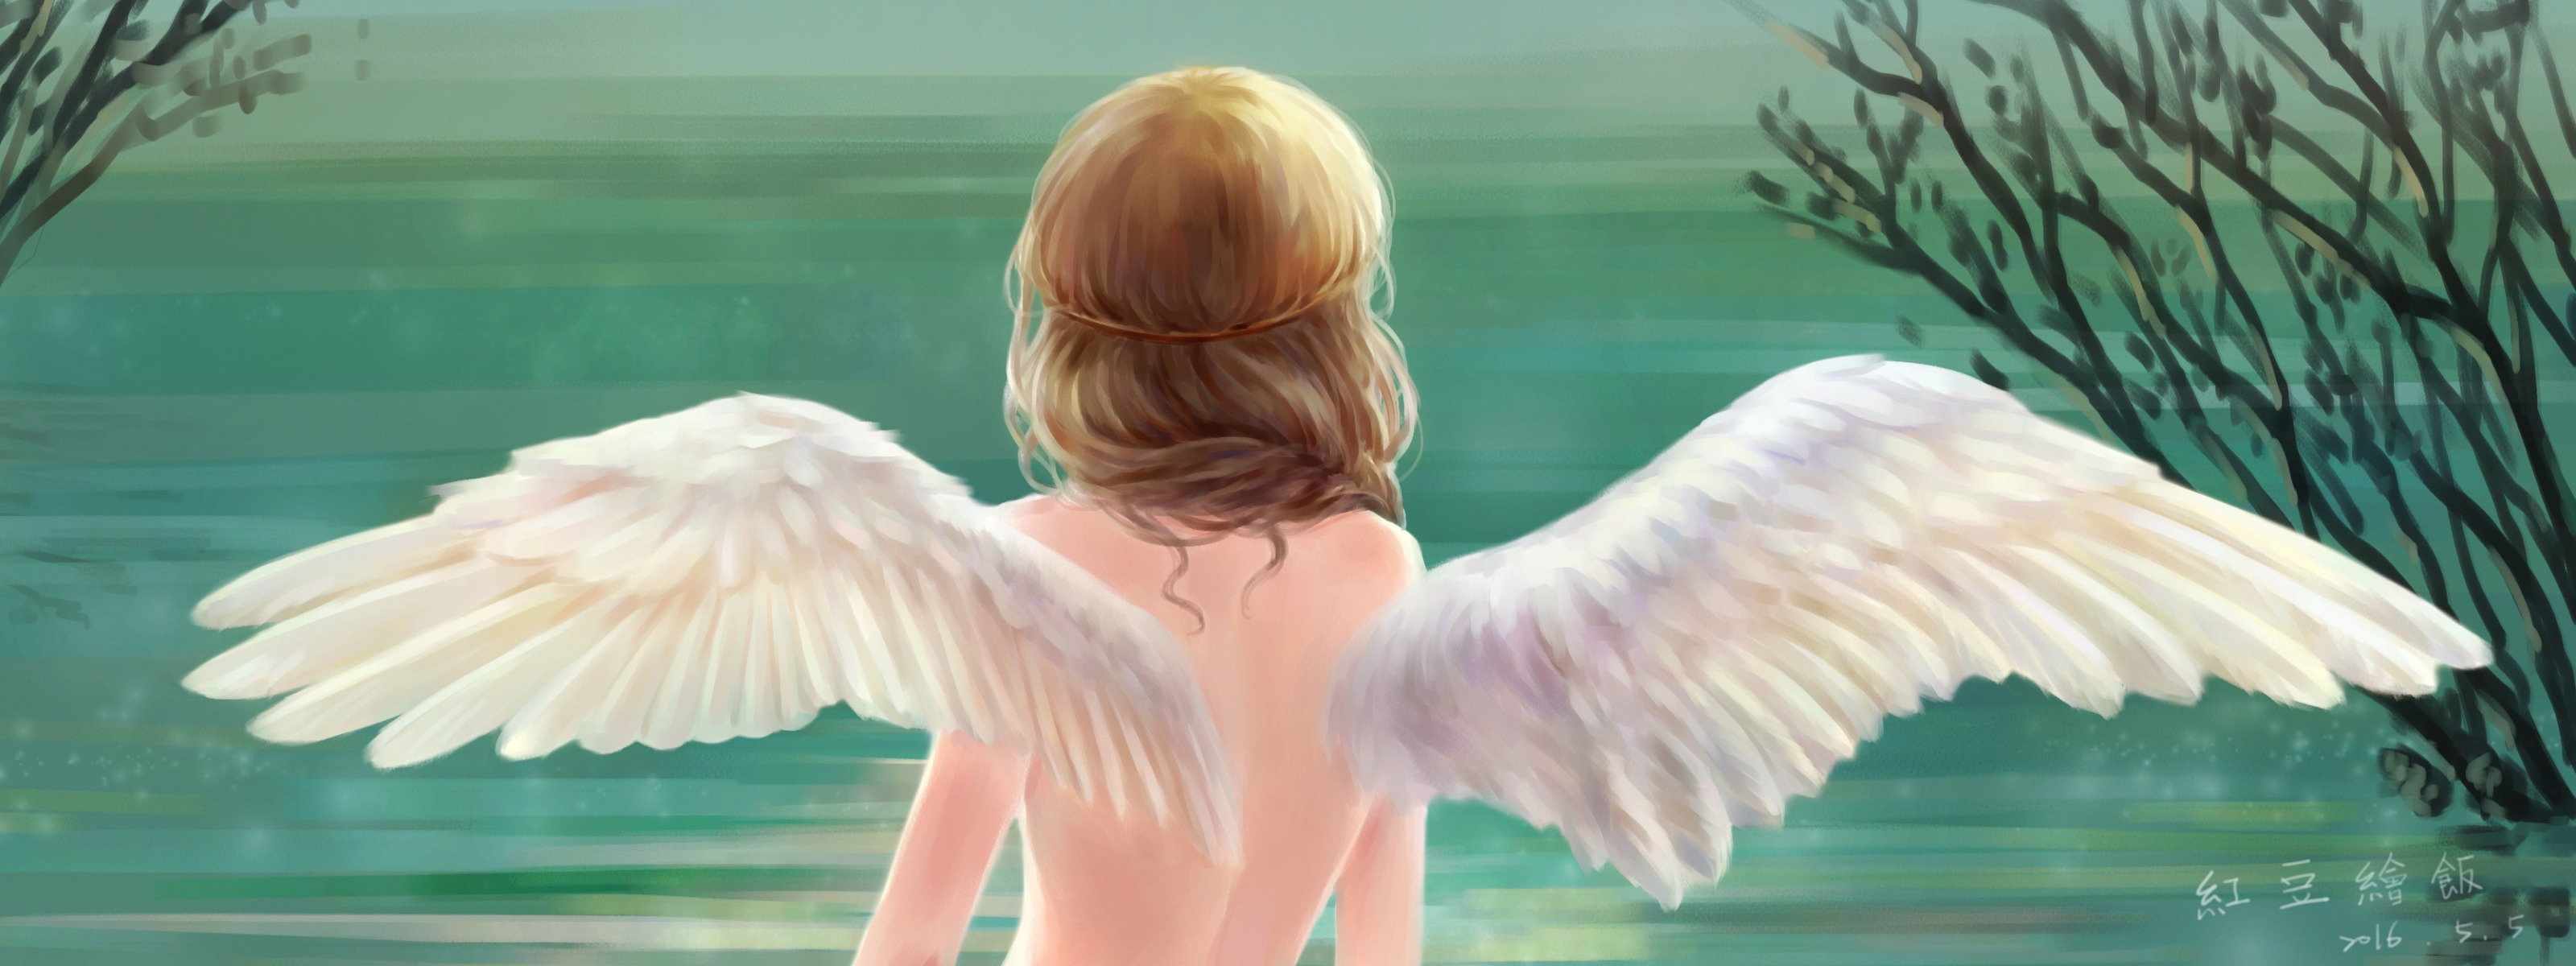 Крылья ангела на спине. Крылья на спине у девушки. Женщина с крыльями. Девушка с крыльями птицы. Видишь крылья за спиной